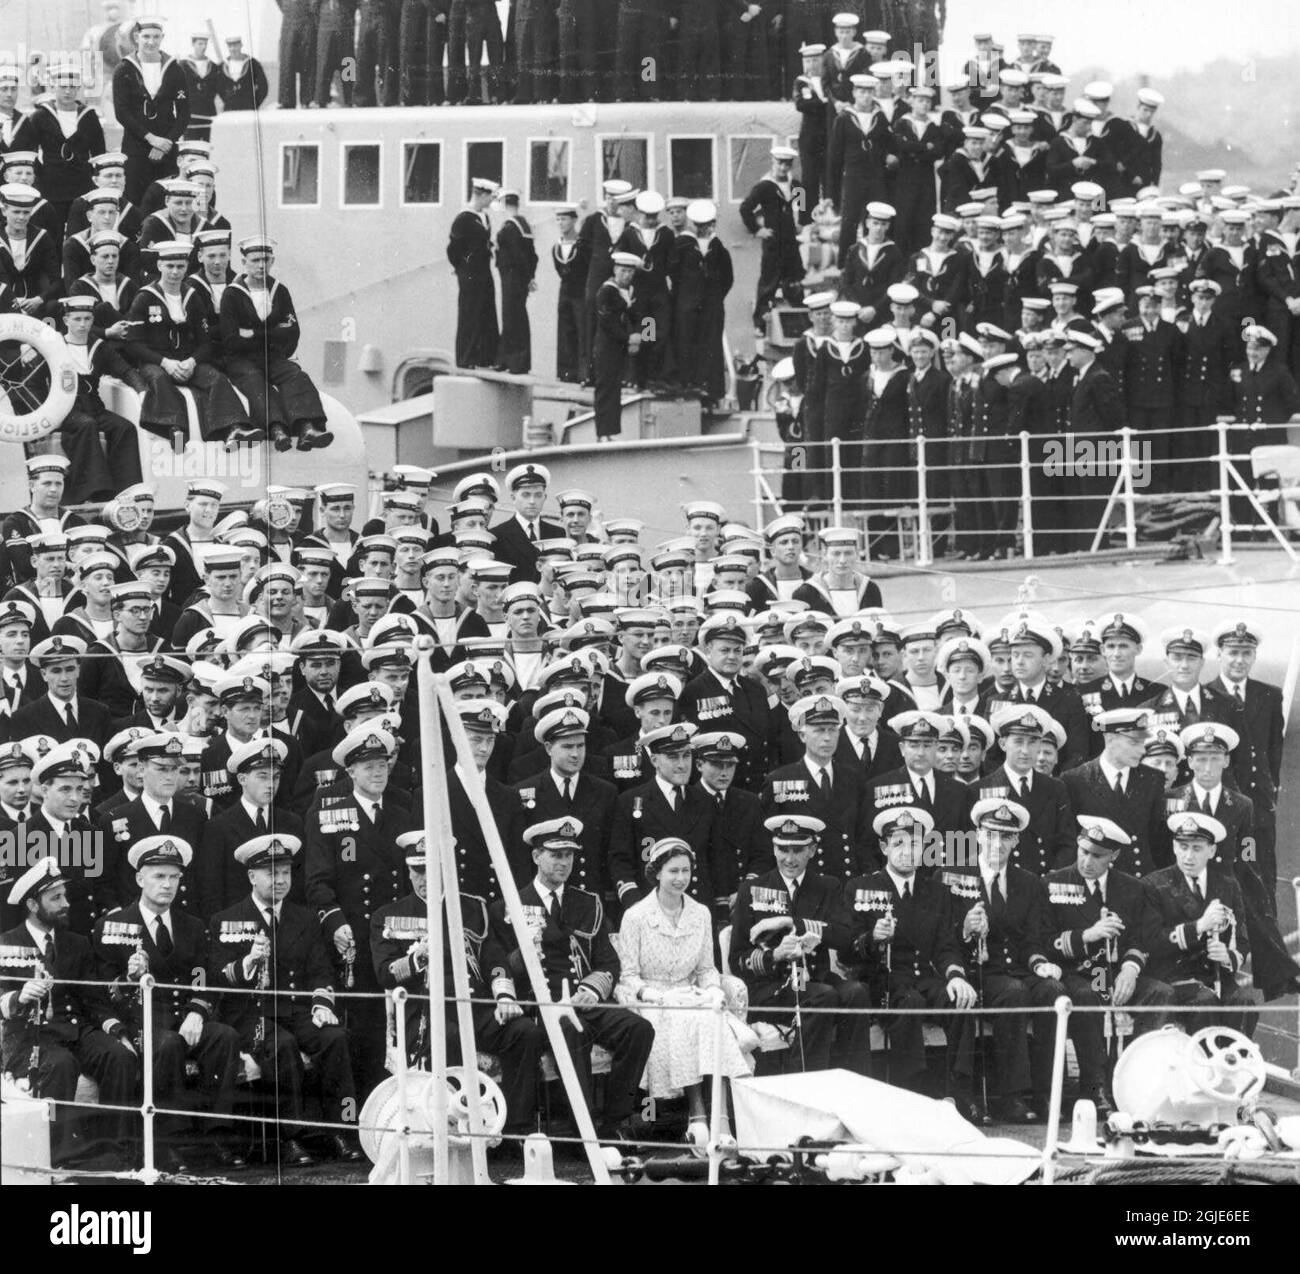 Königin Elizabeth II. Und Prinz Philip bei einem Staatsbesuch in Stockholm, Schweden im Juni 1956. Die Besatzung und andere Würdenträger versammelten sich an Bord der Britannia. Foto: Folke Hellberg / DN / TT Code: 23 Stockfoto